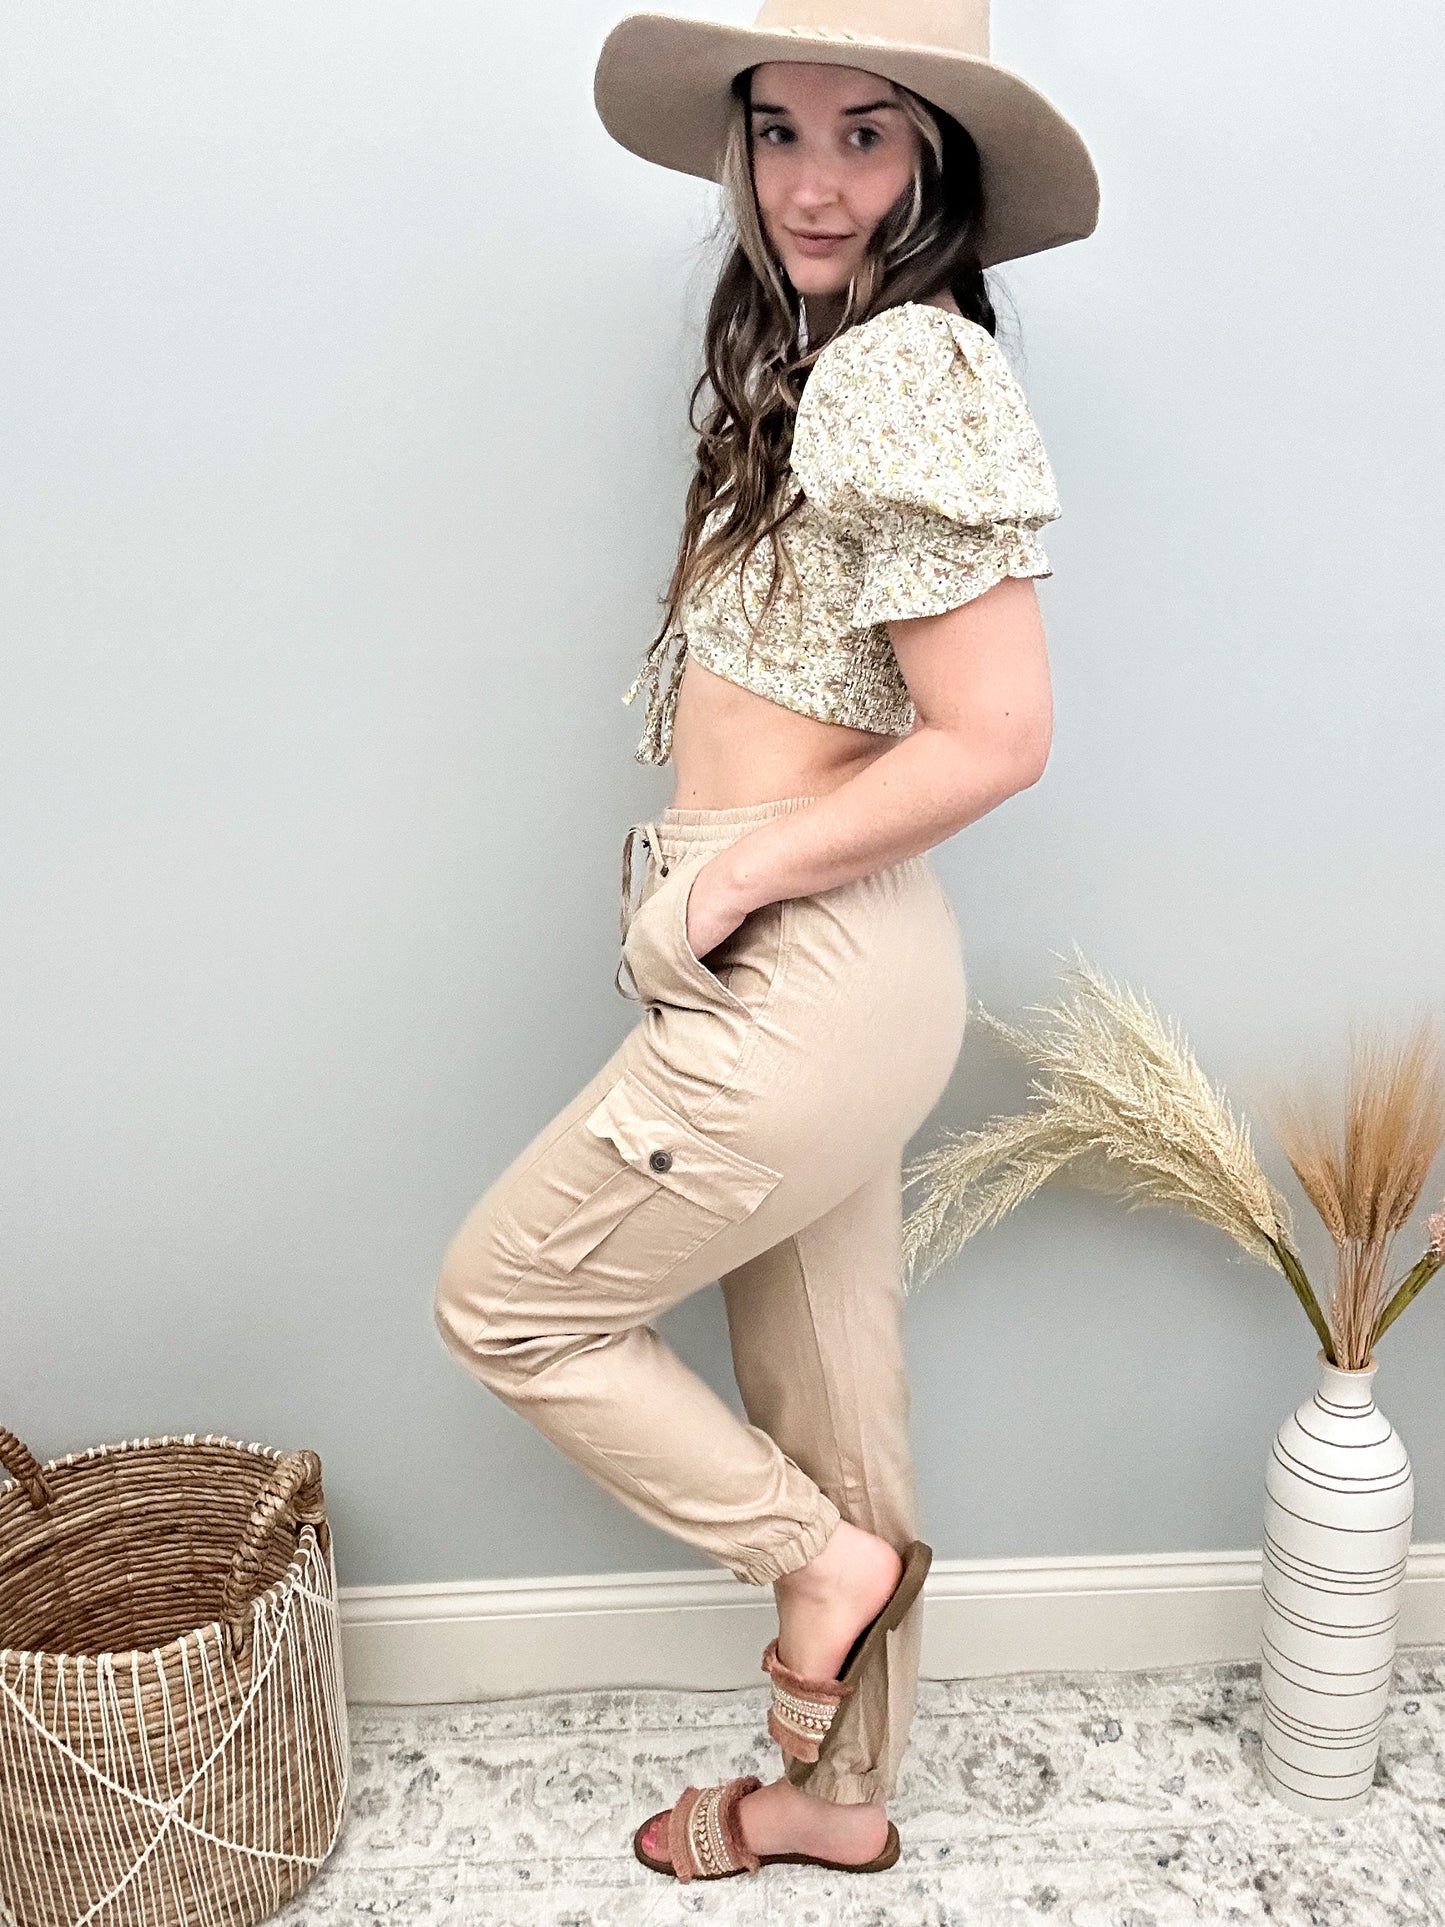 Brooke Linen Cargo Pants - Khaki